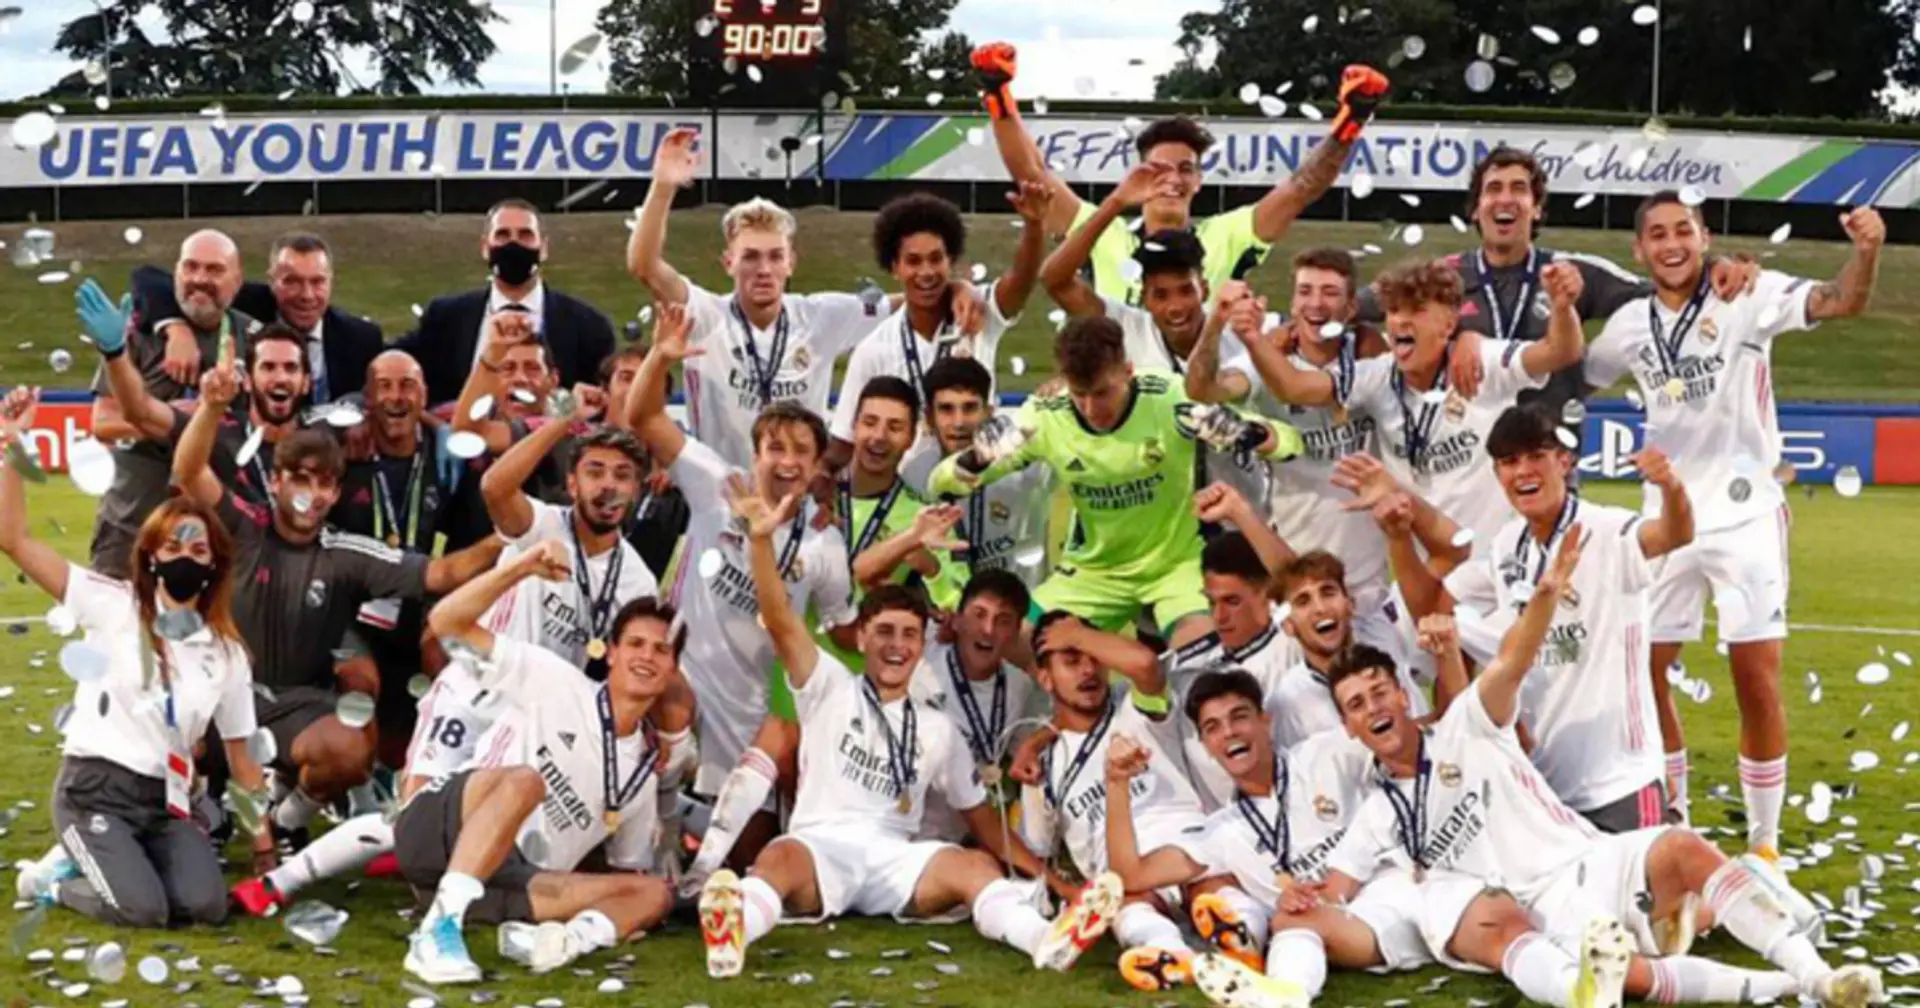 Zidane tiene preparado un premio para los juveniles campeones de la Youth League